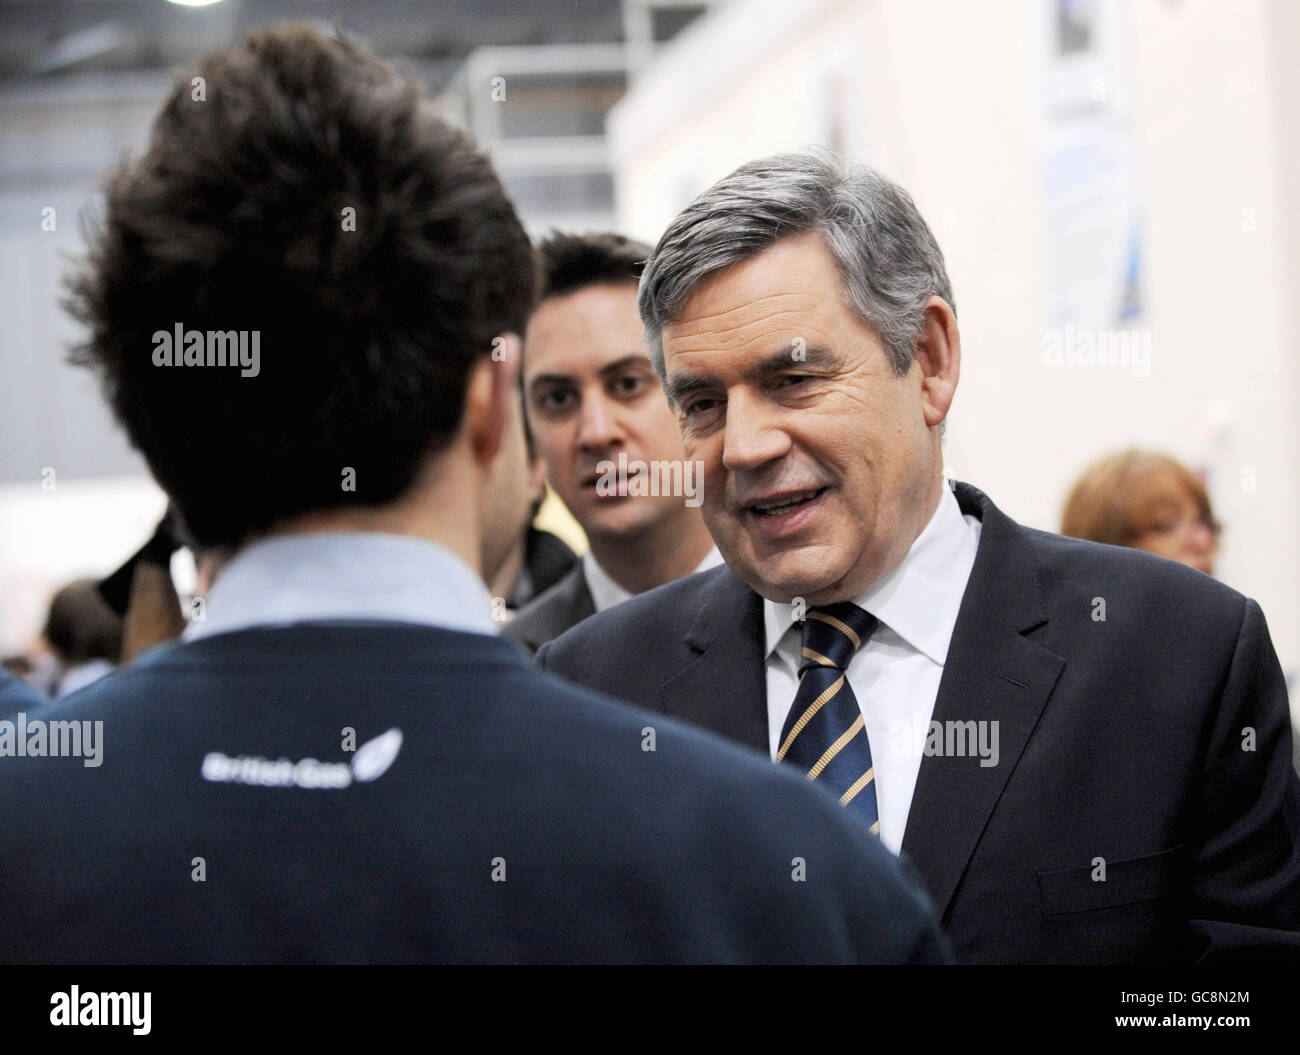 Le Premier ministre Gordon Brown et le secrétaire à l'énergie Ed Miliband rencontrent des ingénieurs de chaudières stagiaires à la British Gas Energy Academy de Kent, après que le gouvernement a annoncé un programme de « mise à niveau » de chaudière offrant aux clients 400 000 de rabais sur le prix d'une nouvelle chaudière. Banque D'Images